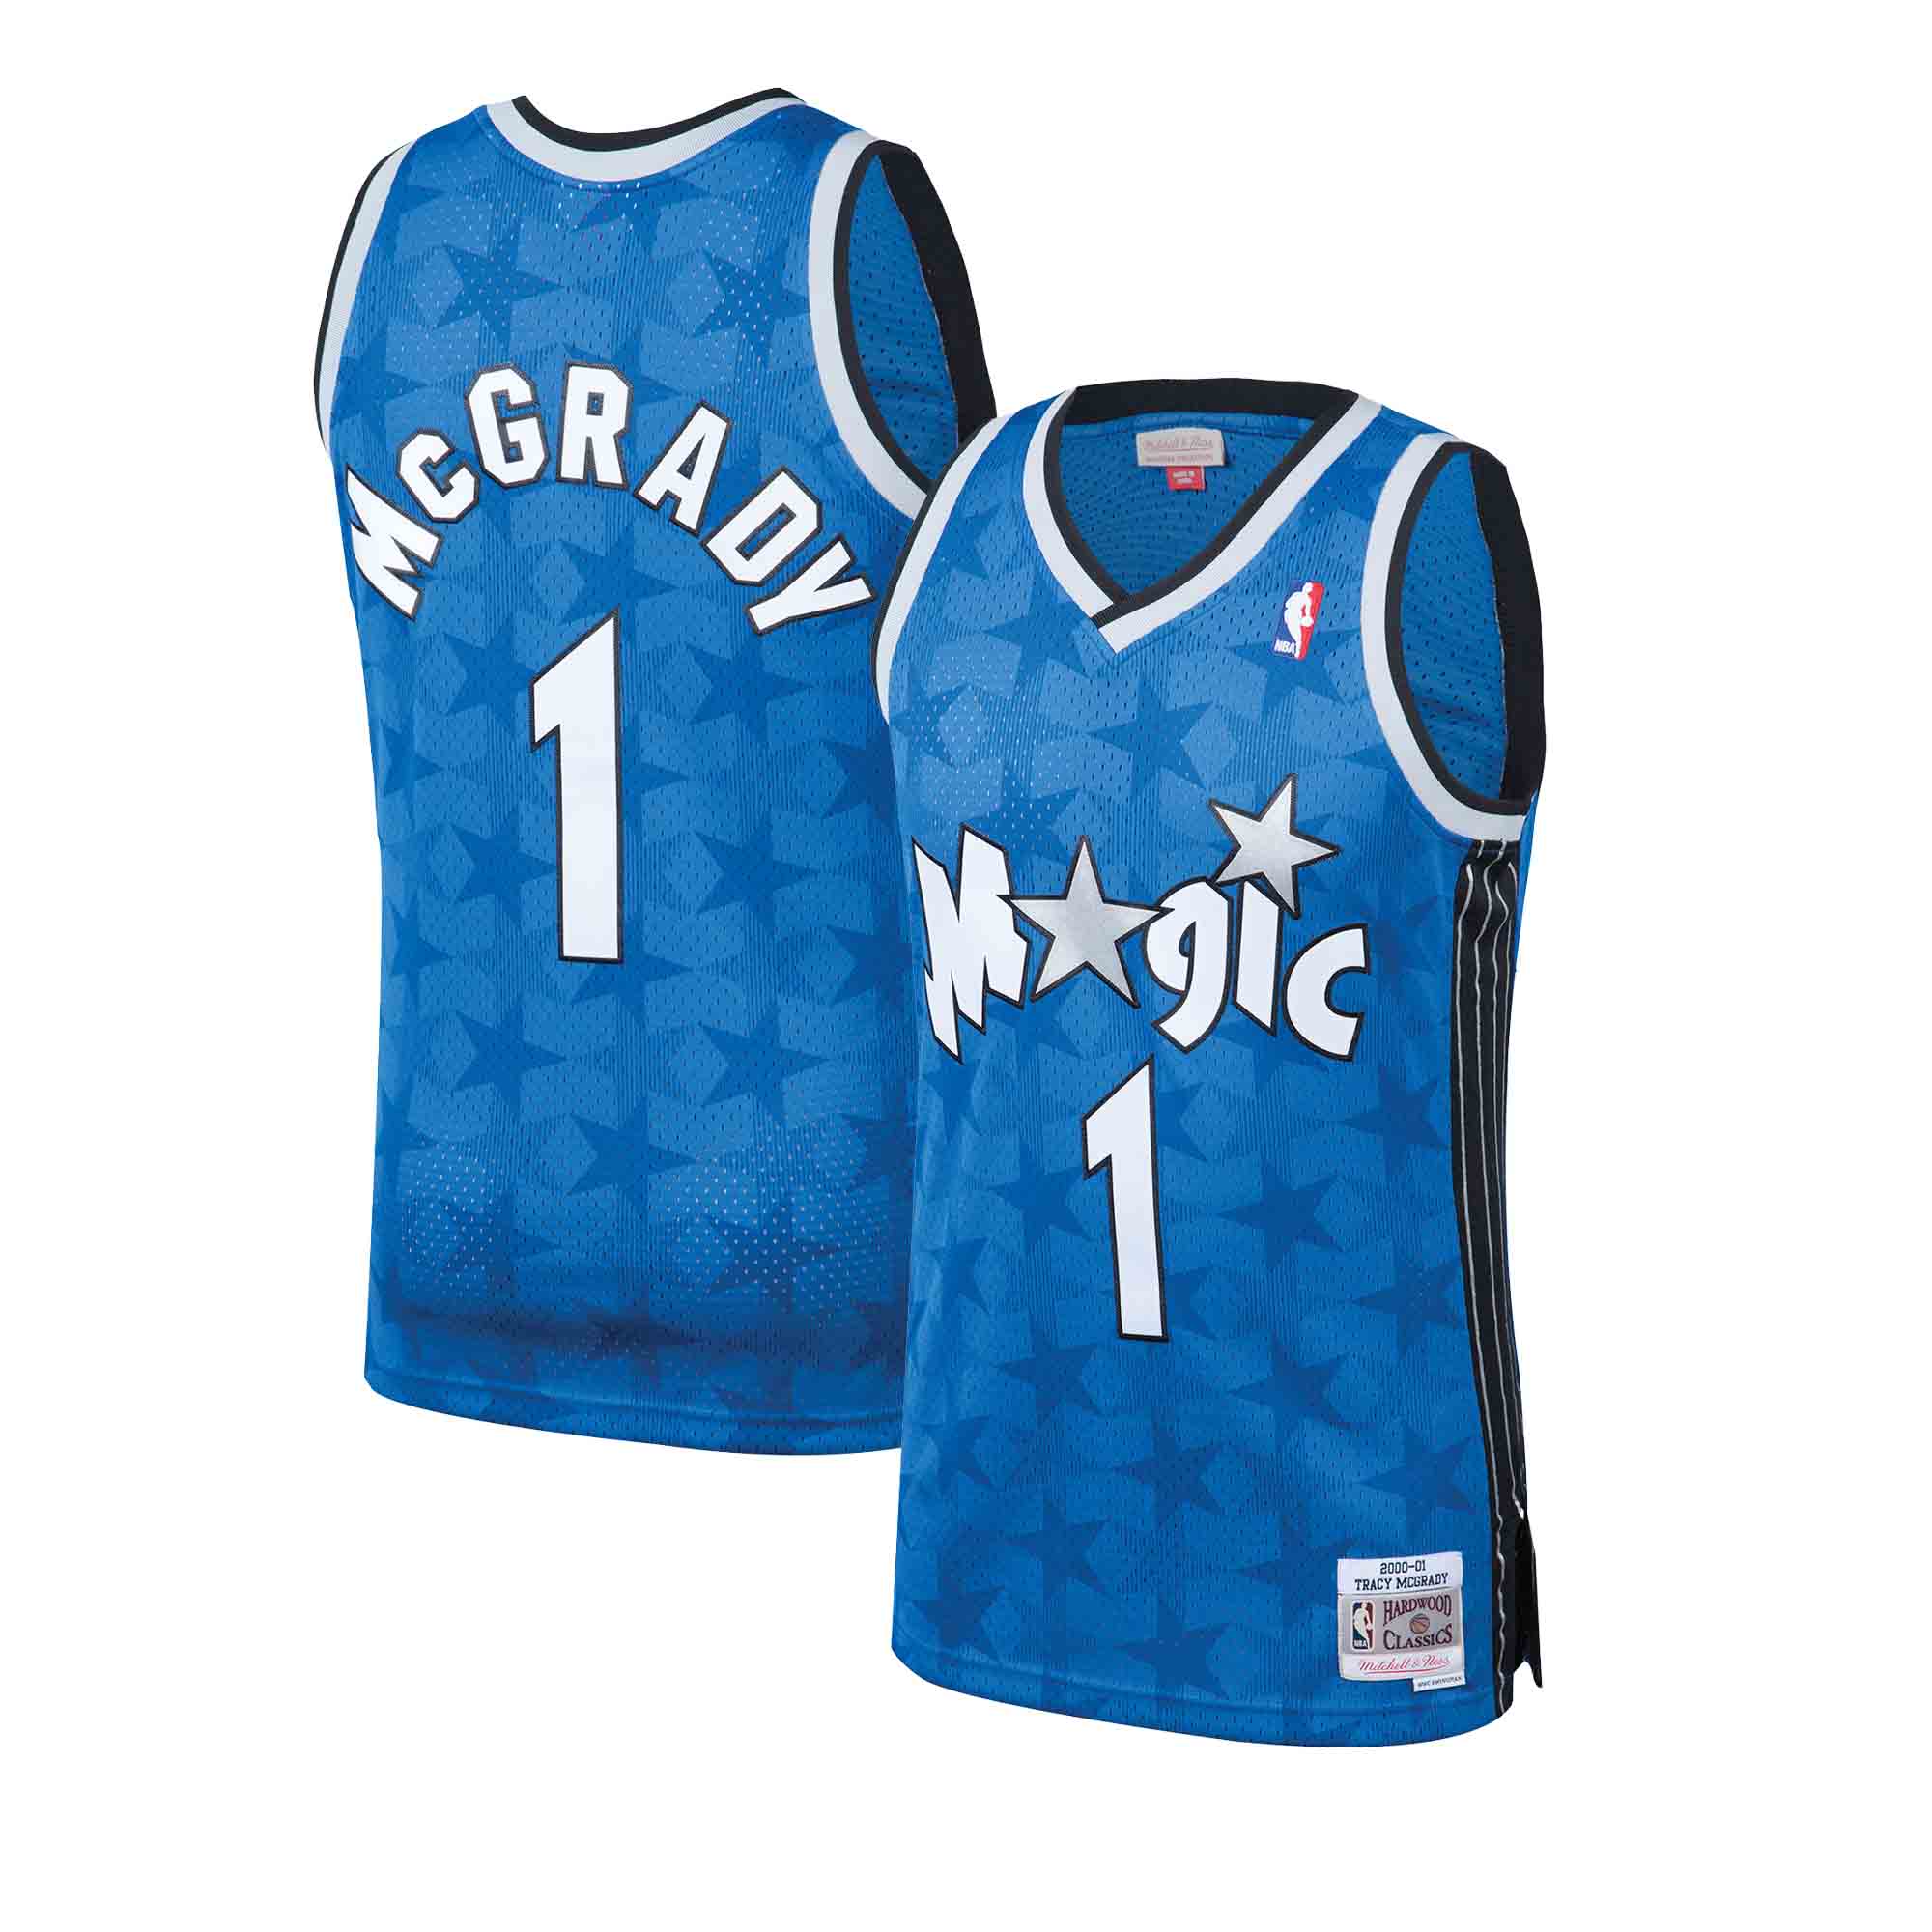 Tracy McGrady Orlando Magic Jerseys, Tracy McGrady Shirts, Magic Apparel, Tracy  McGrady Gear